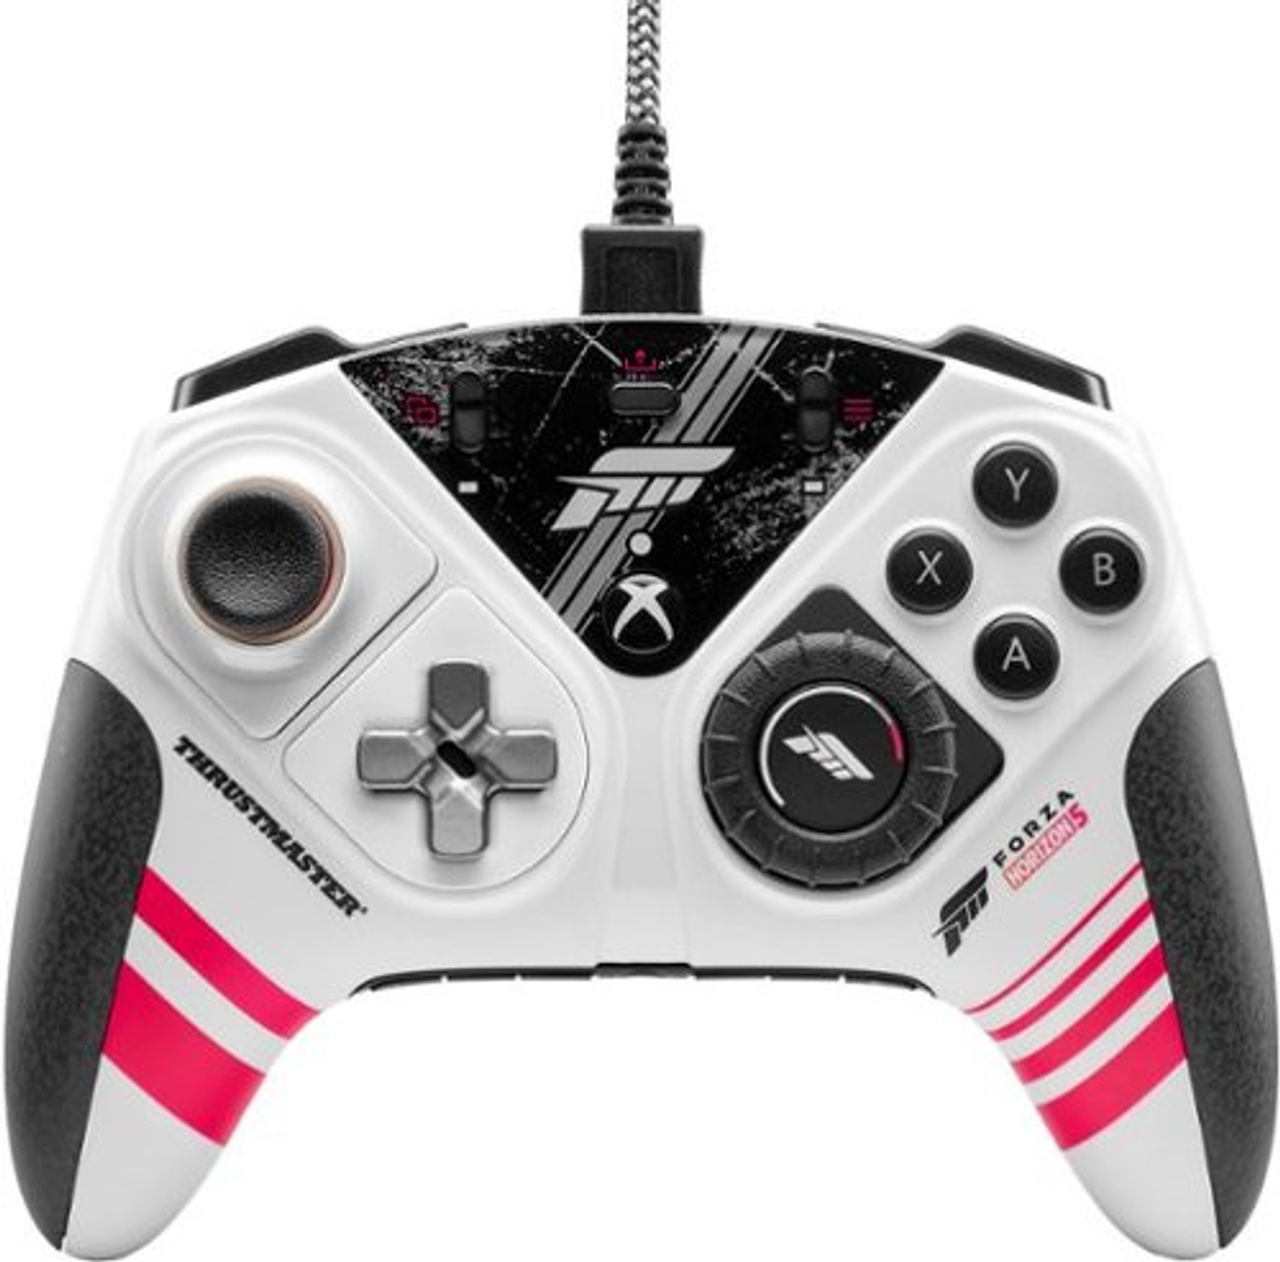 Thrustmaster - eSwap X R Pro Controller Forza Horizon 5 Edition